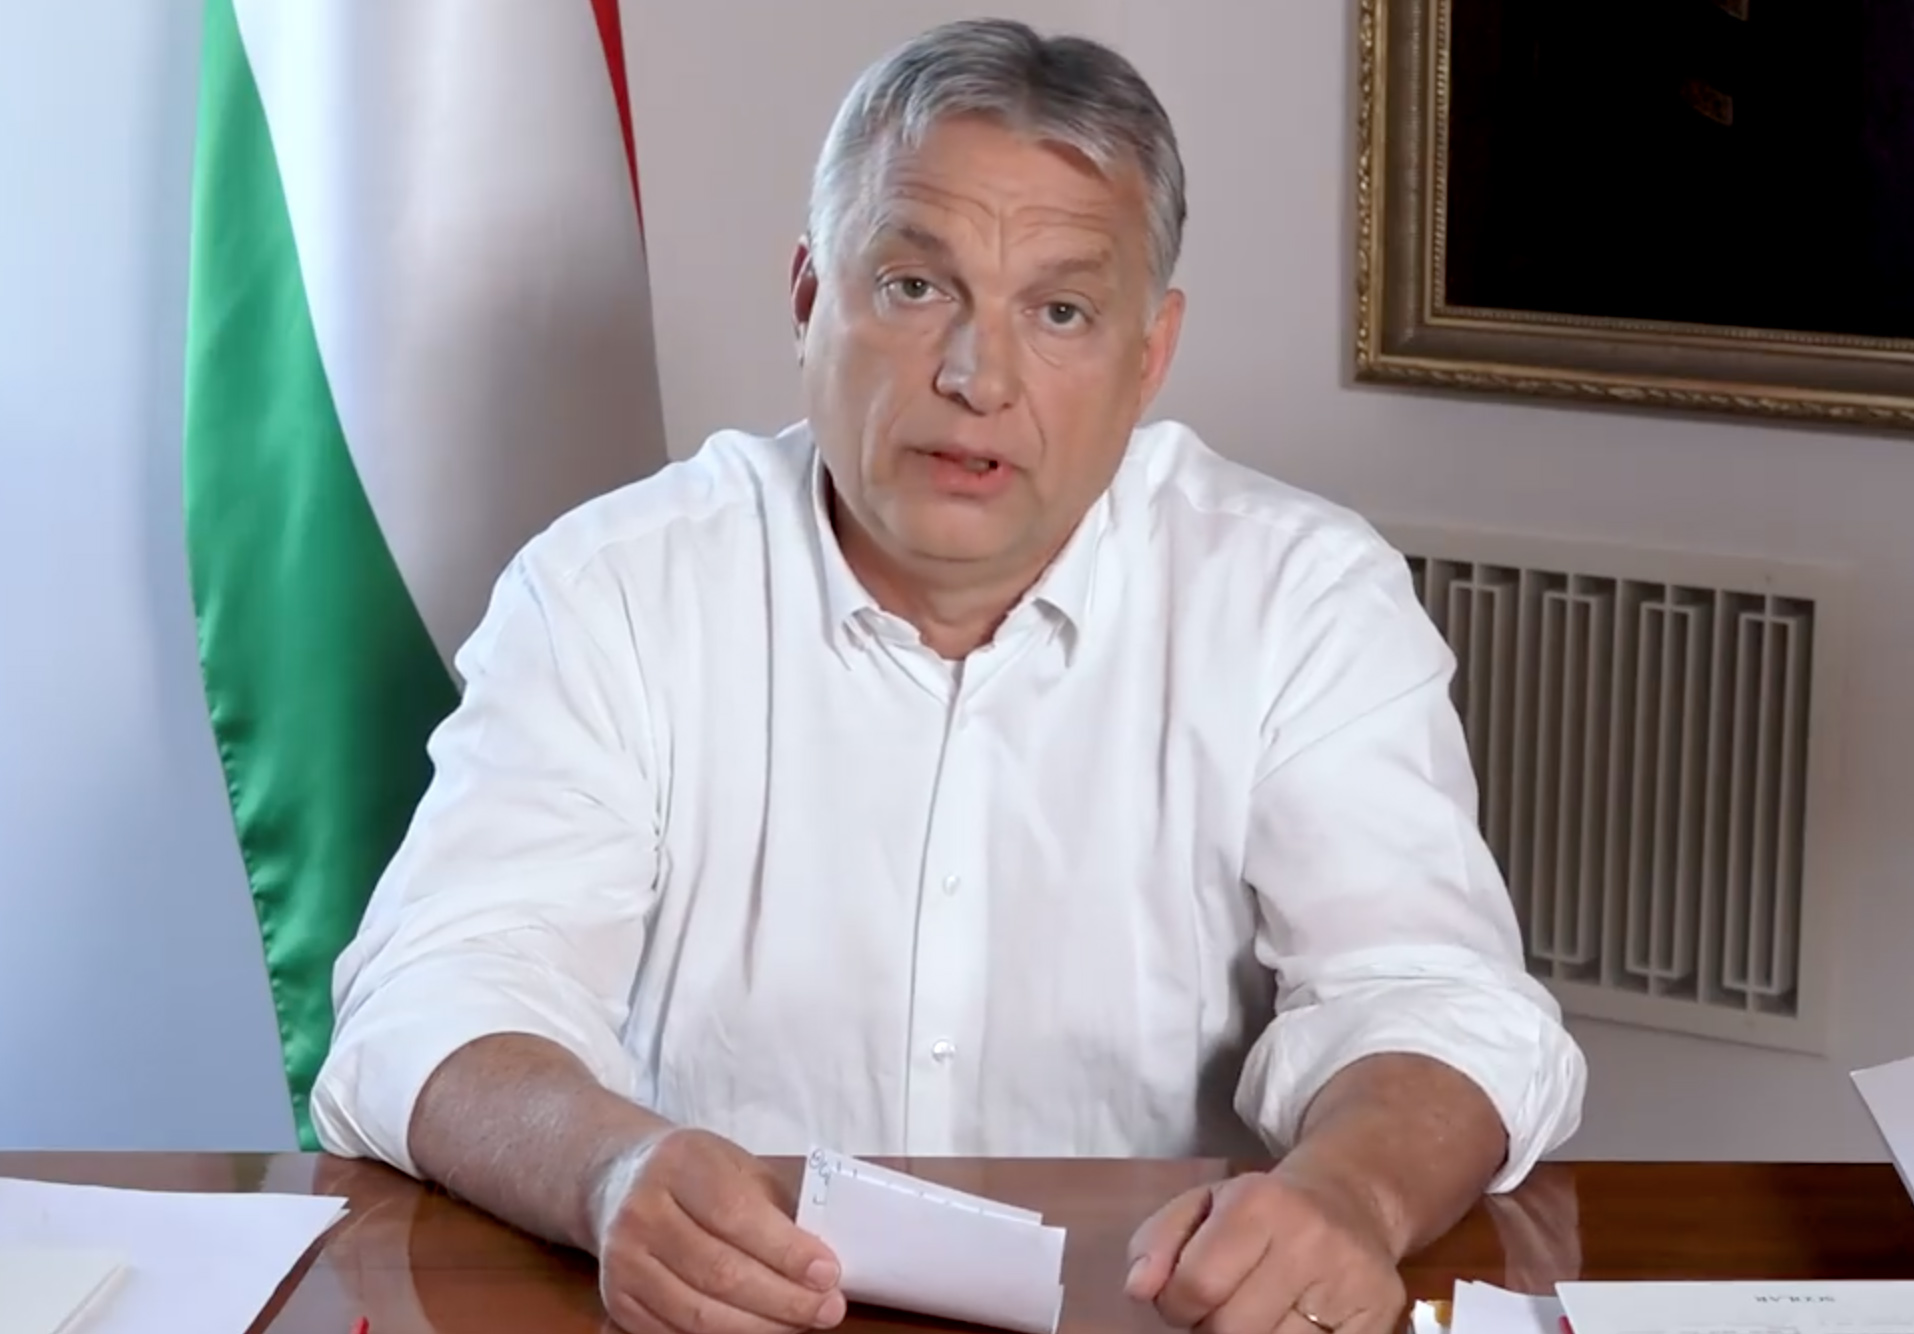 Már több mint egymillióan követik Orbán Viktort a Facebookon